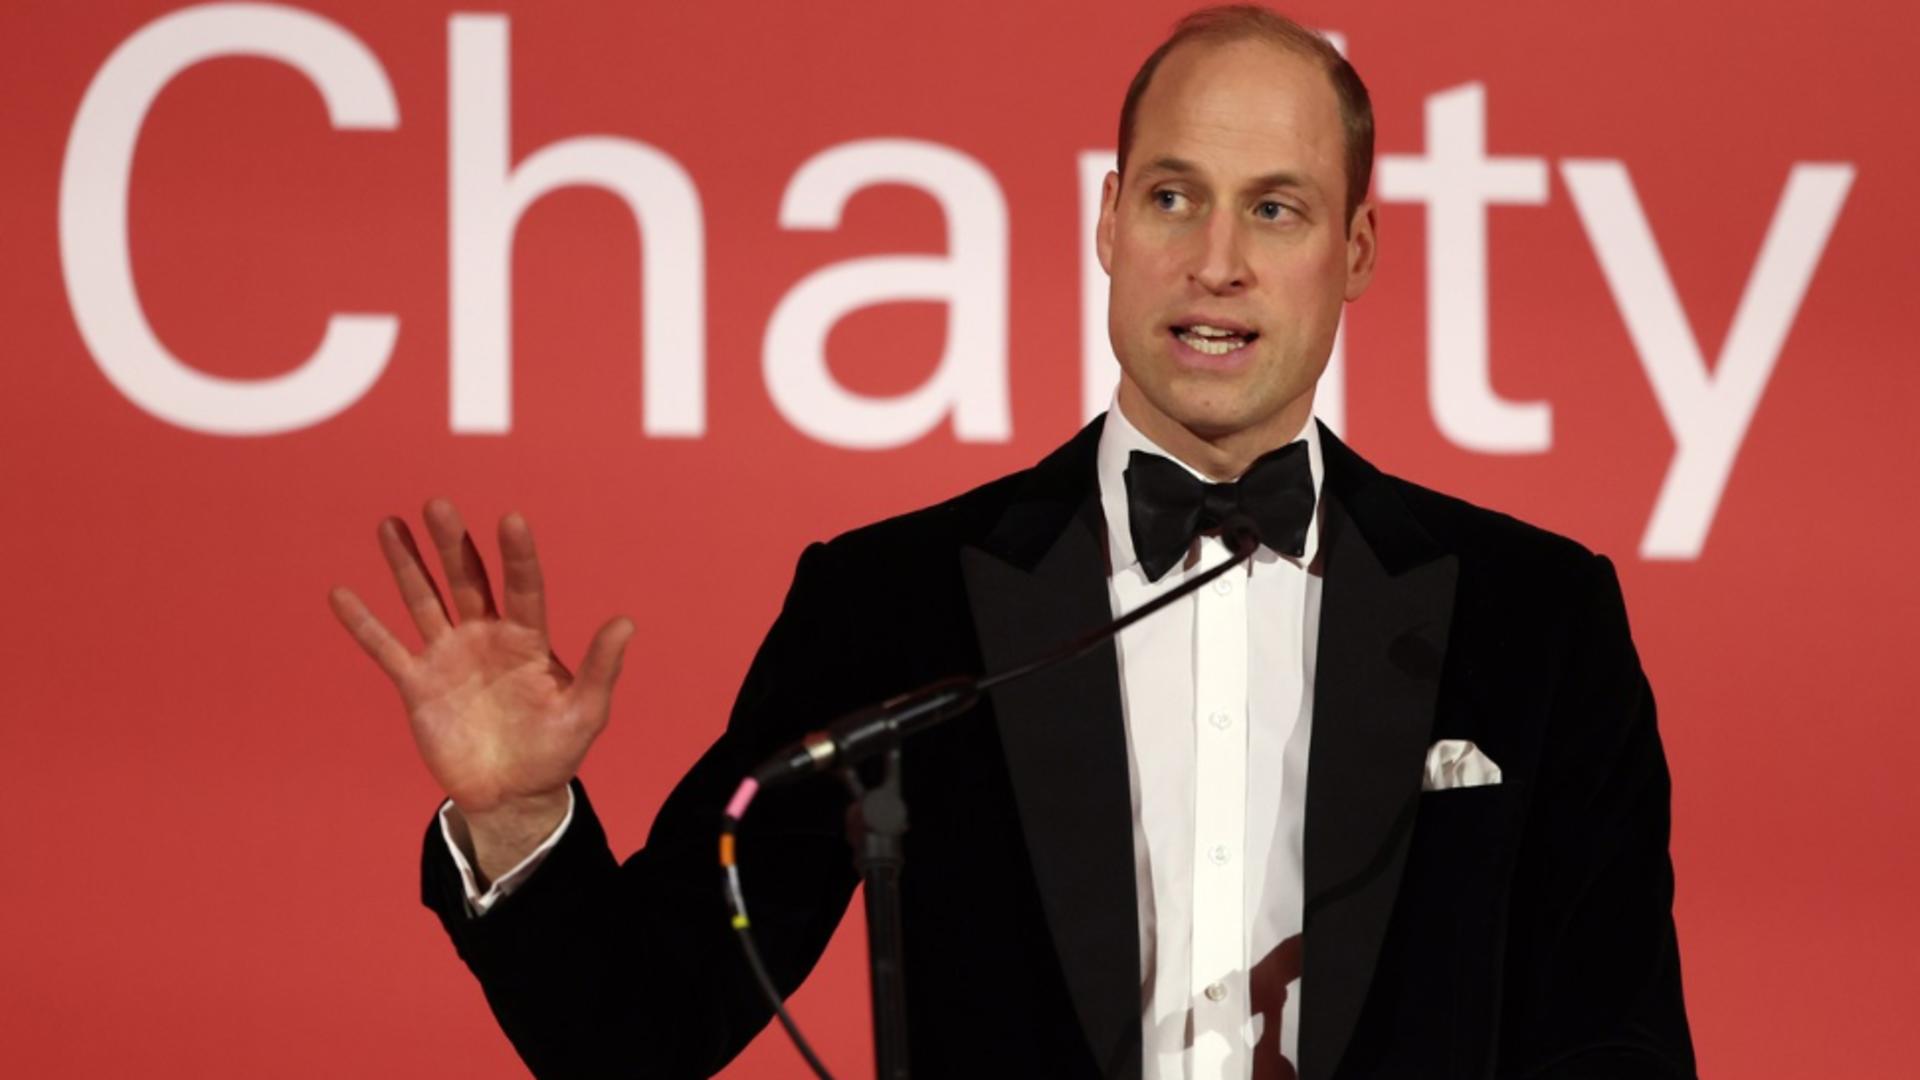 Prințul William a mulţumit oamenilor pentru mesajele lor de susţinere pentru Regele Charles. Foto/Profimedia